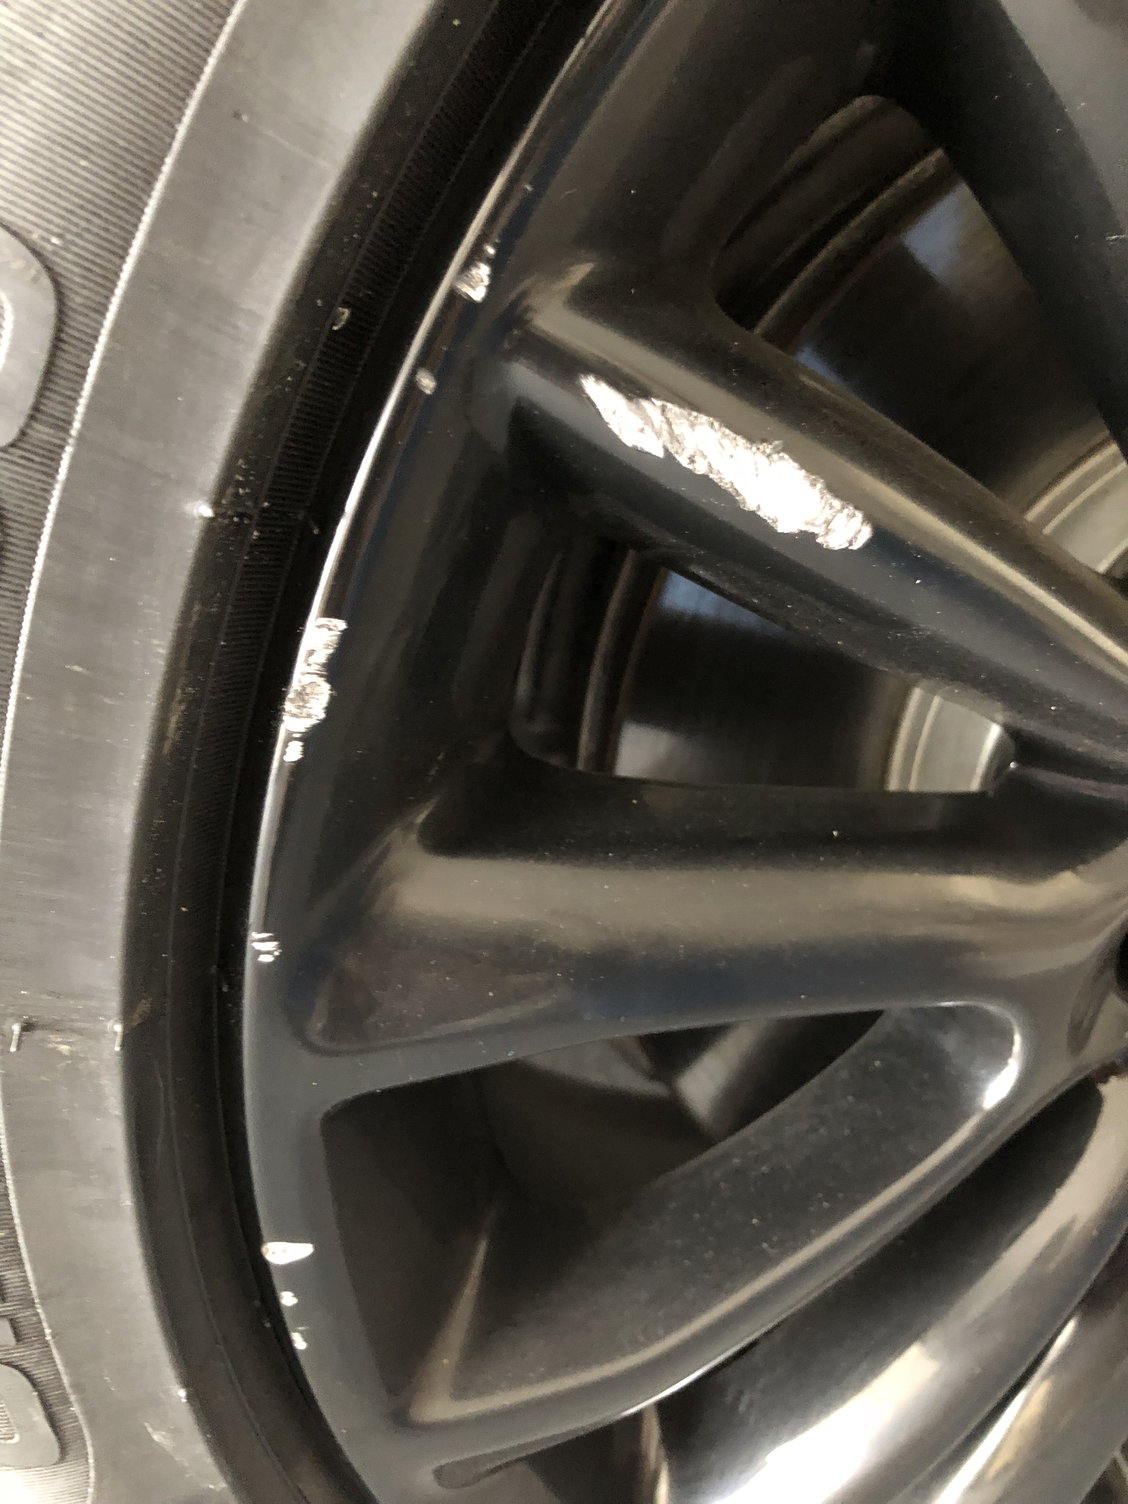 FOLLOWIN Gloss Black Rim Touch Up Paint for Cars, Black Wheel Paint Repair  Kit, Automotive Rim